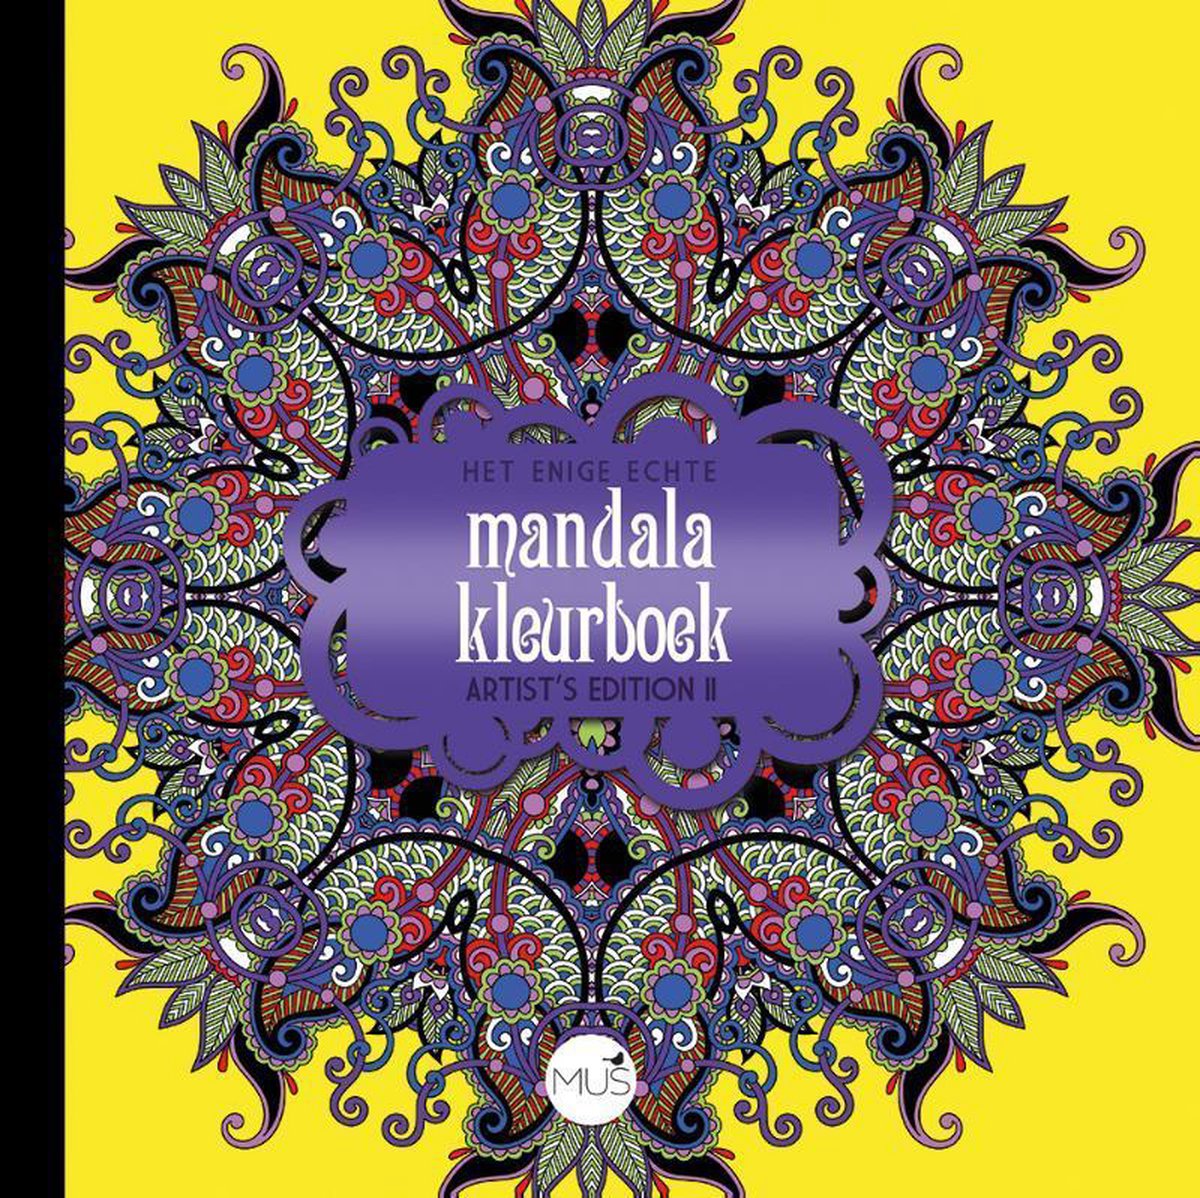 Het enige echte mandala kleurboek Artist Edition II, auteurs | 9789045323794 |... | bol.com